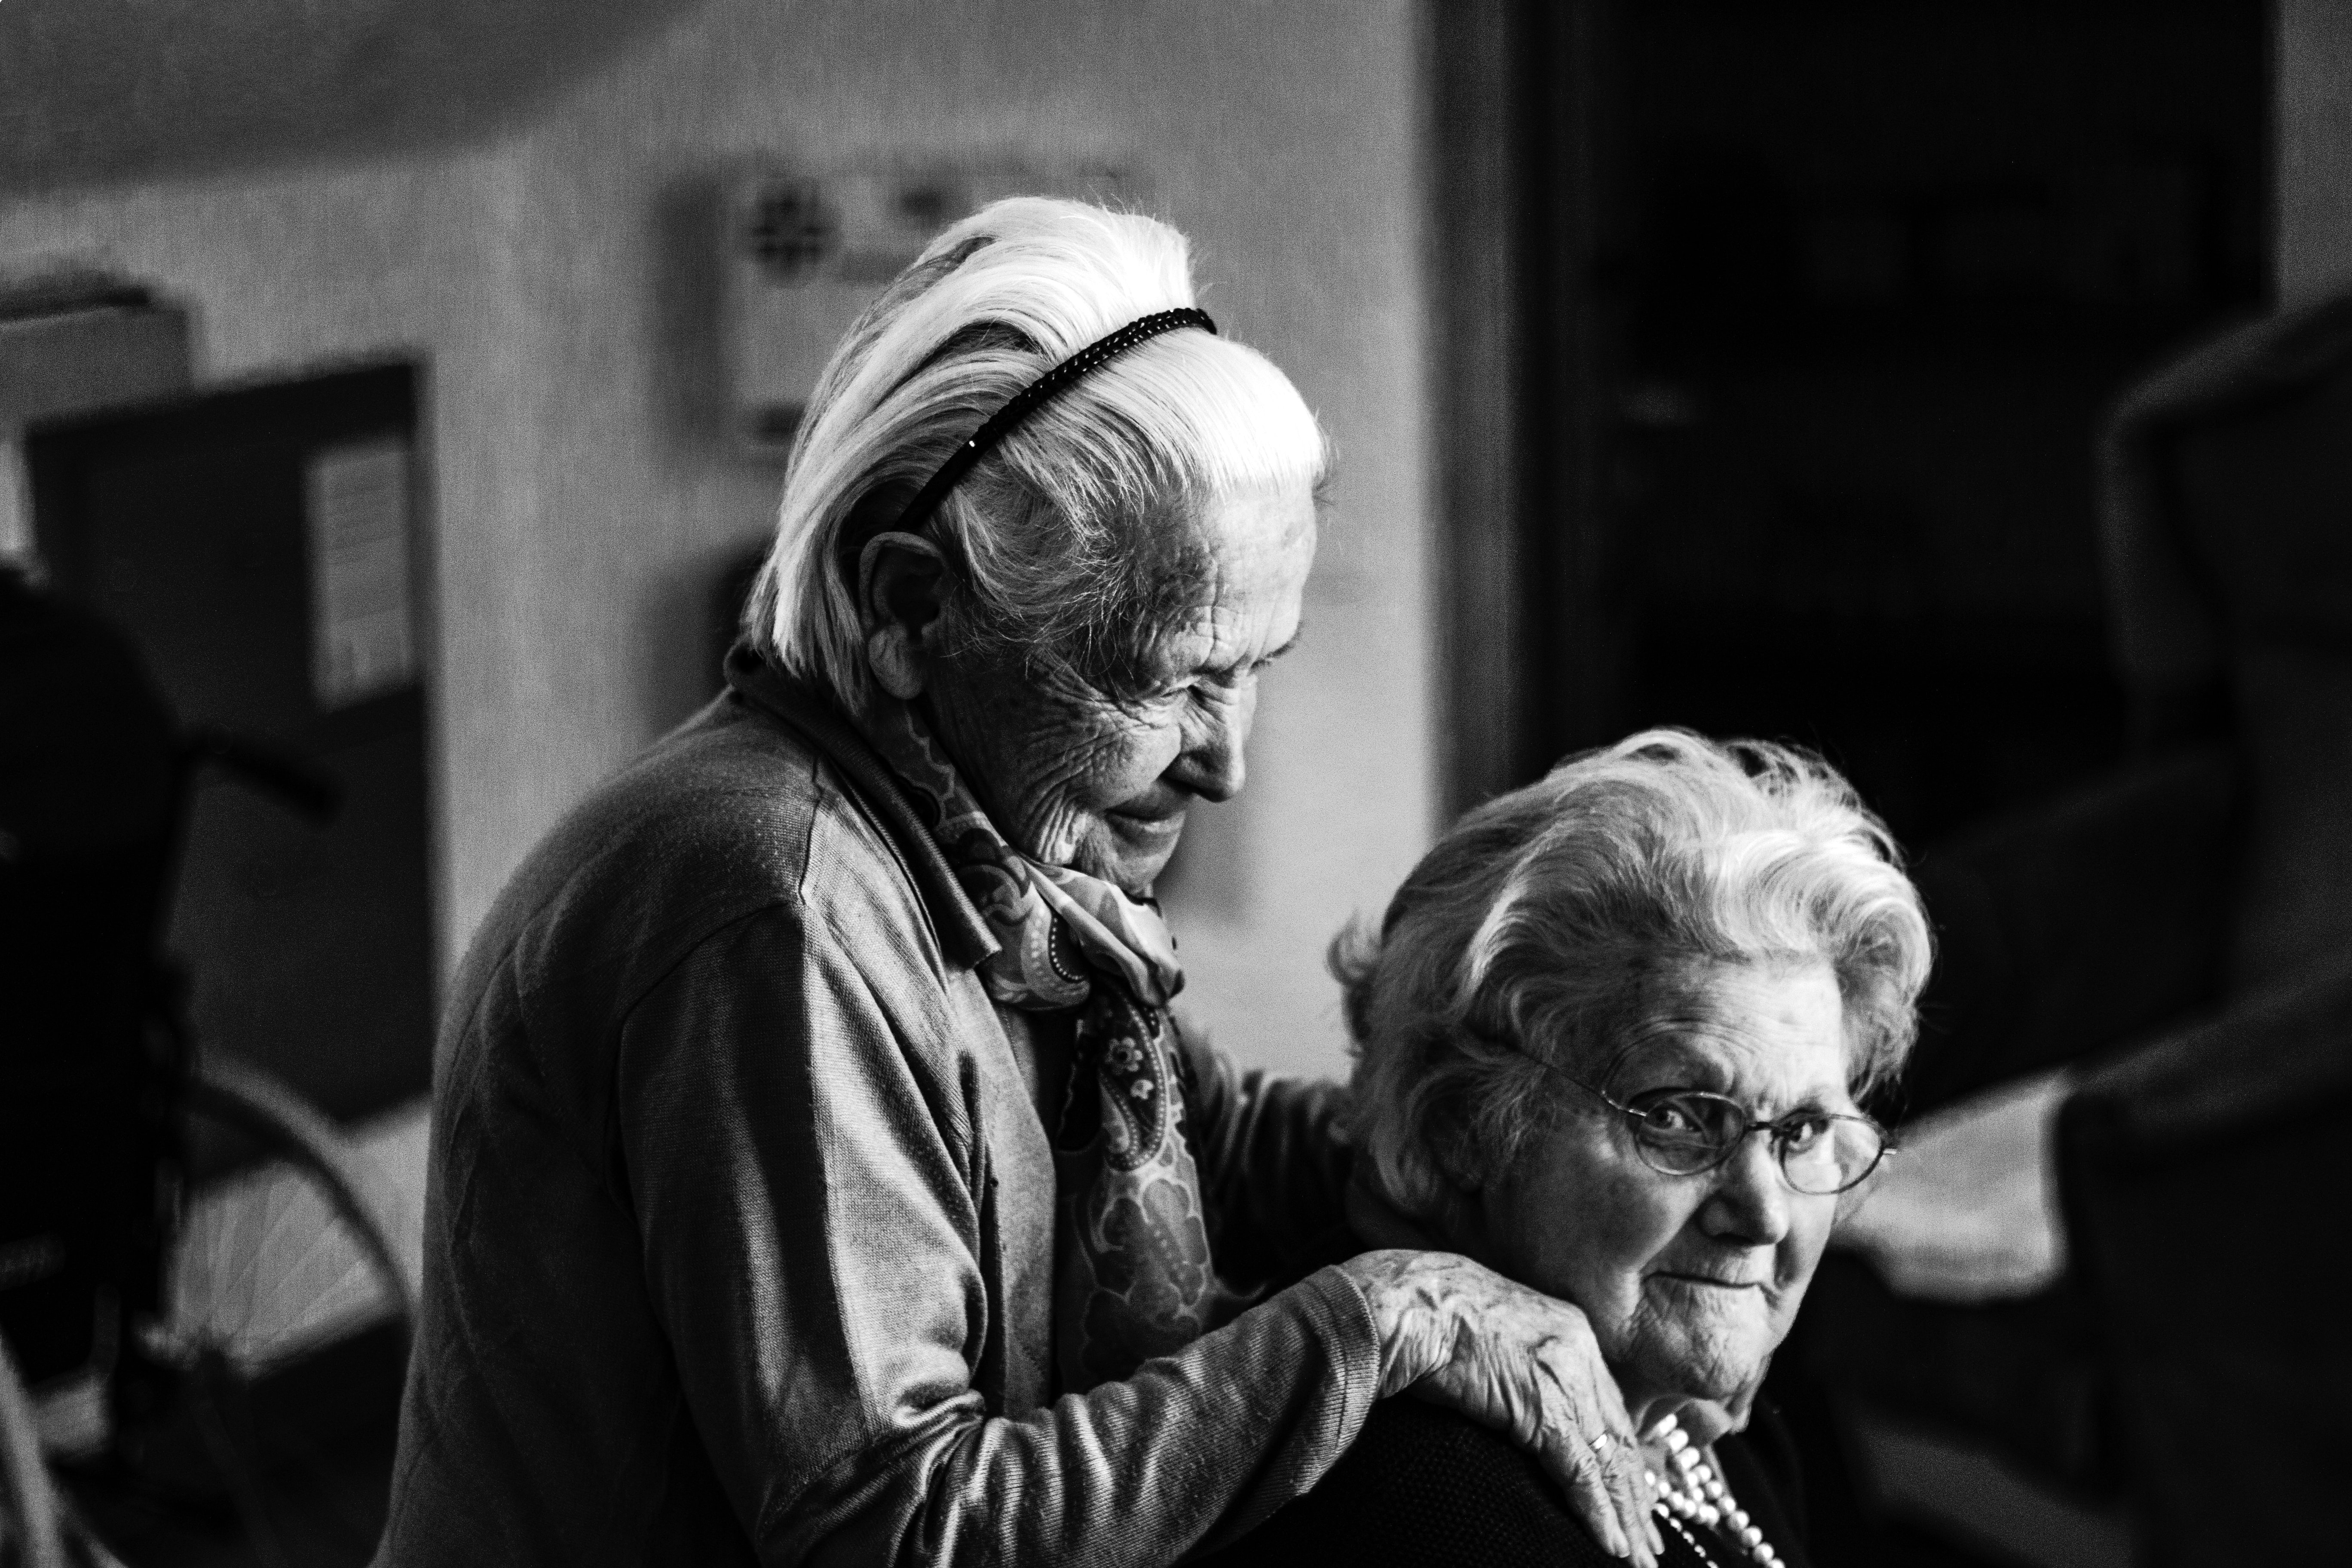 Plusy i minusy pracy jako opiekunka osób starszych